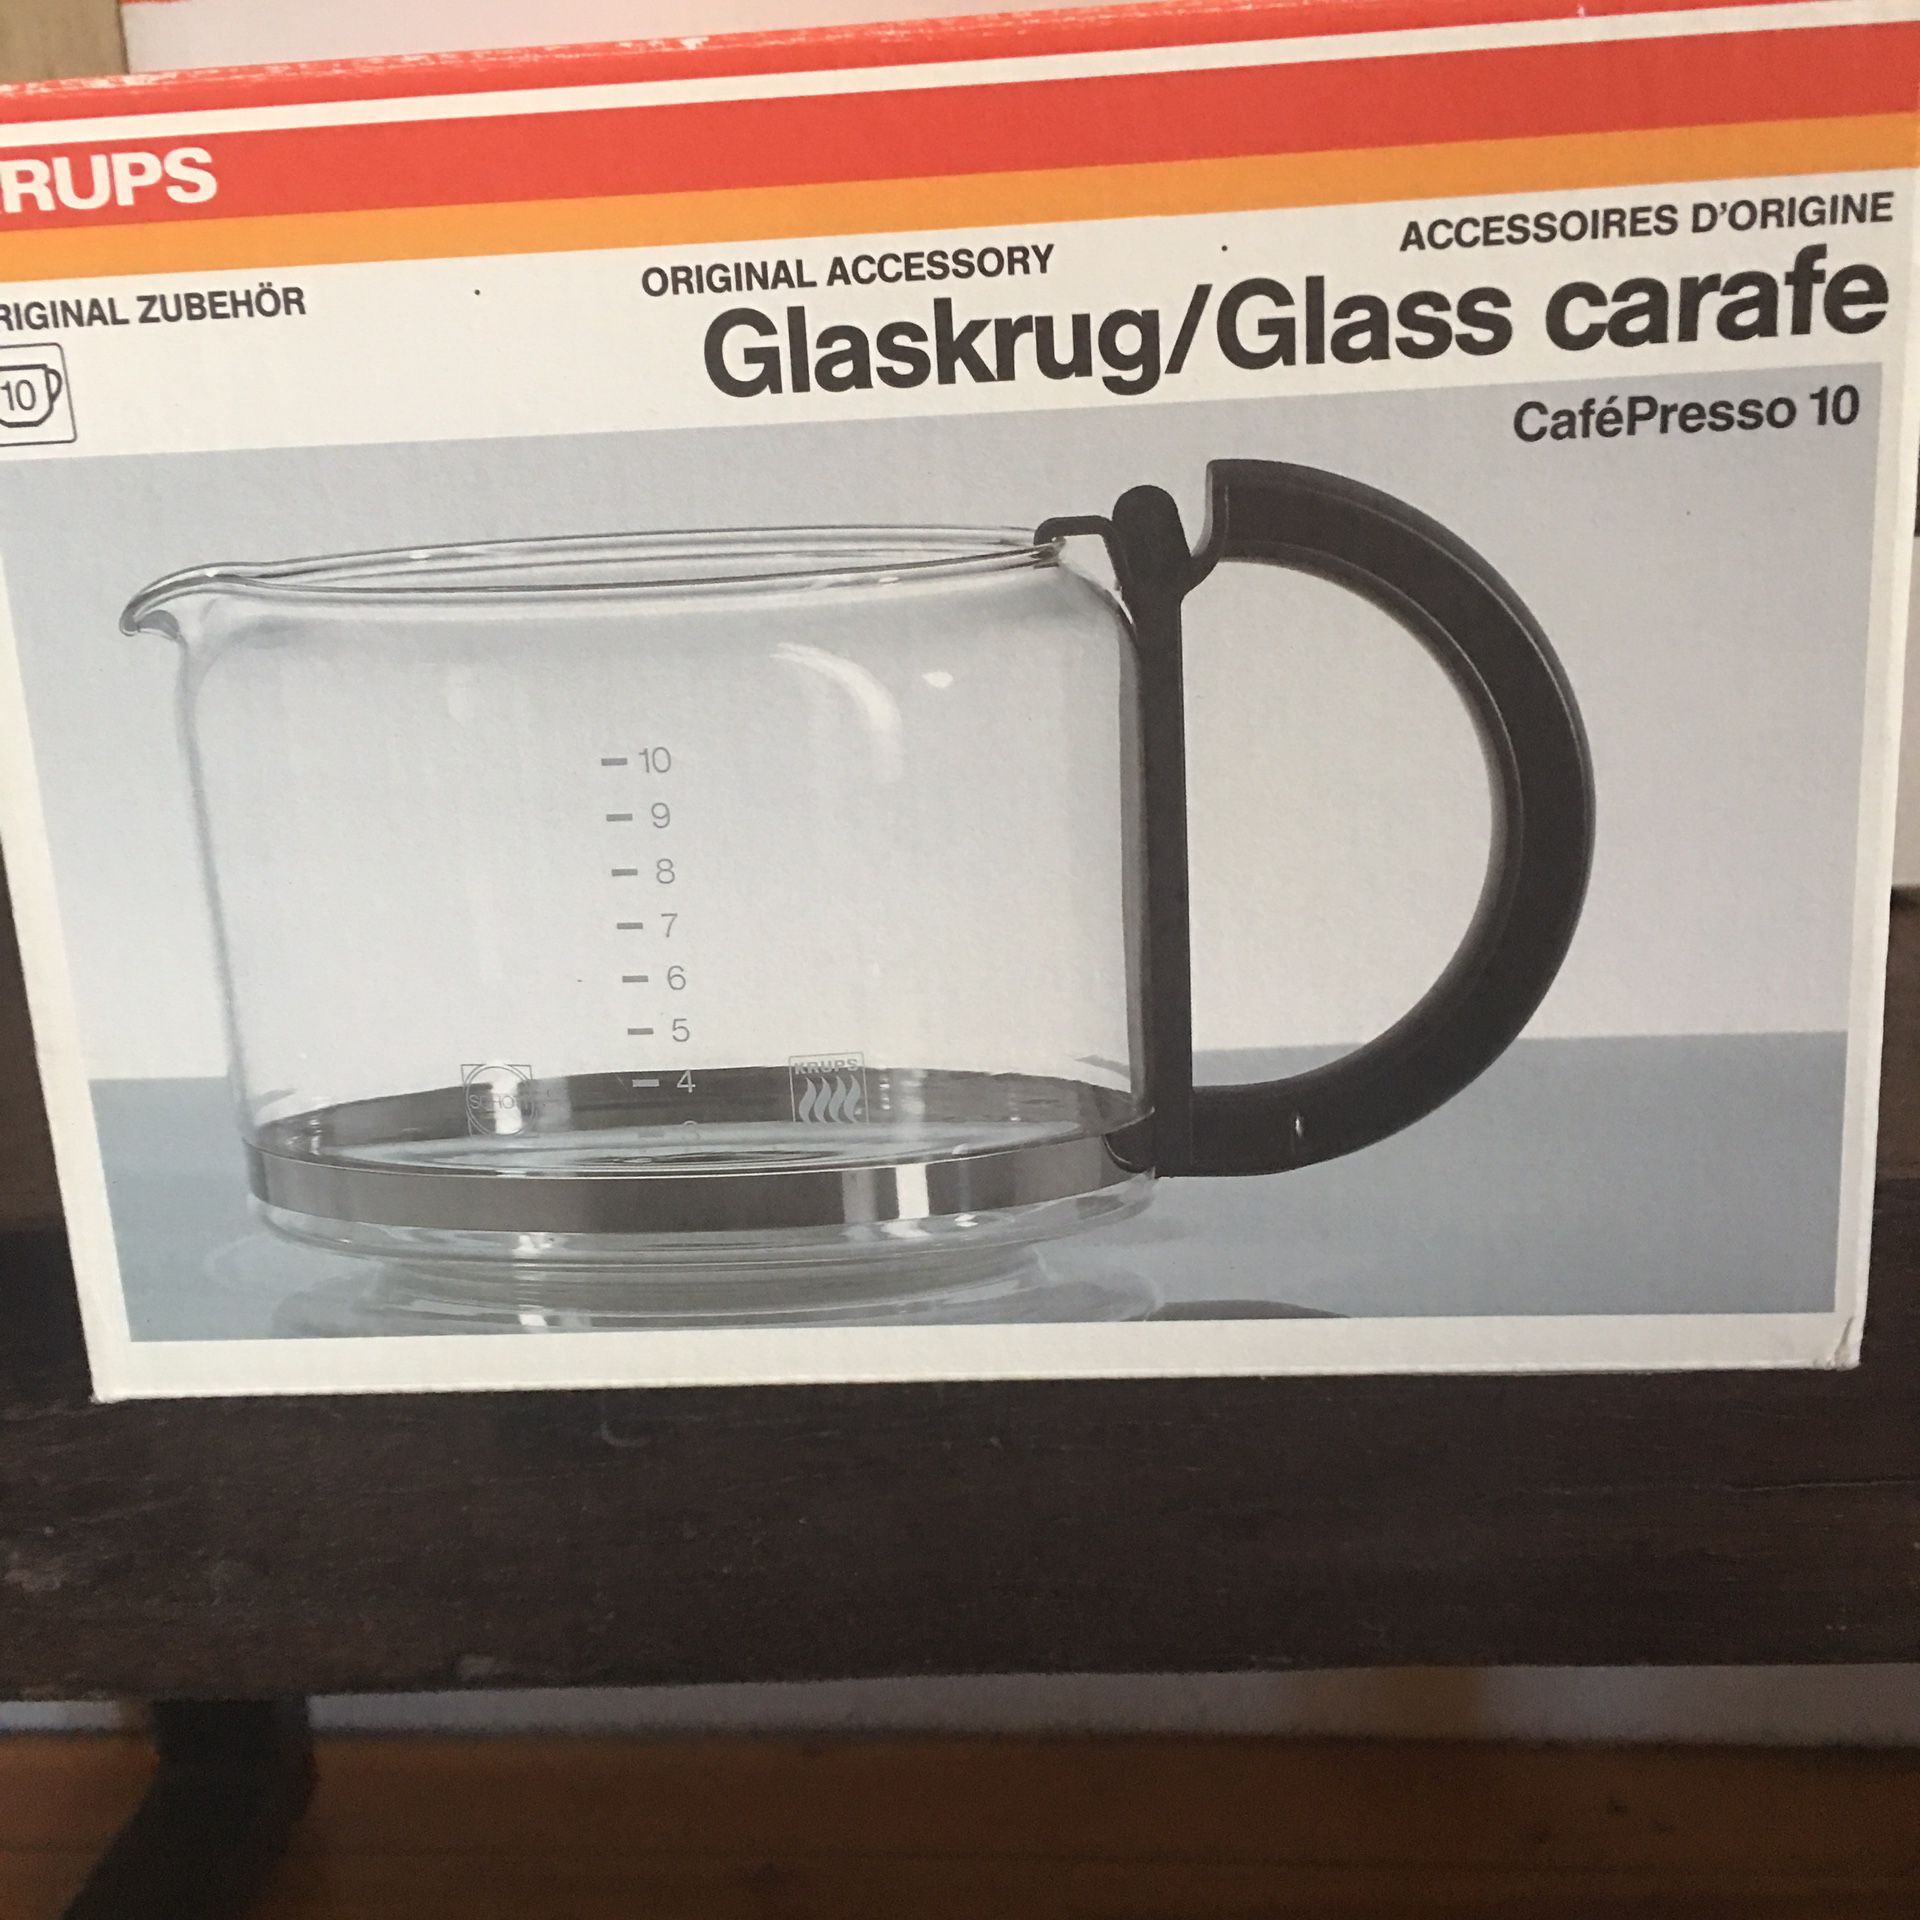 New Krups Glass Carafe - CafePresso 10 036o-42